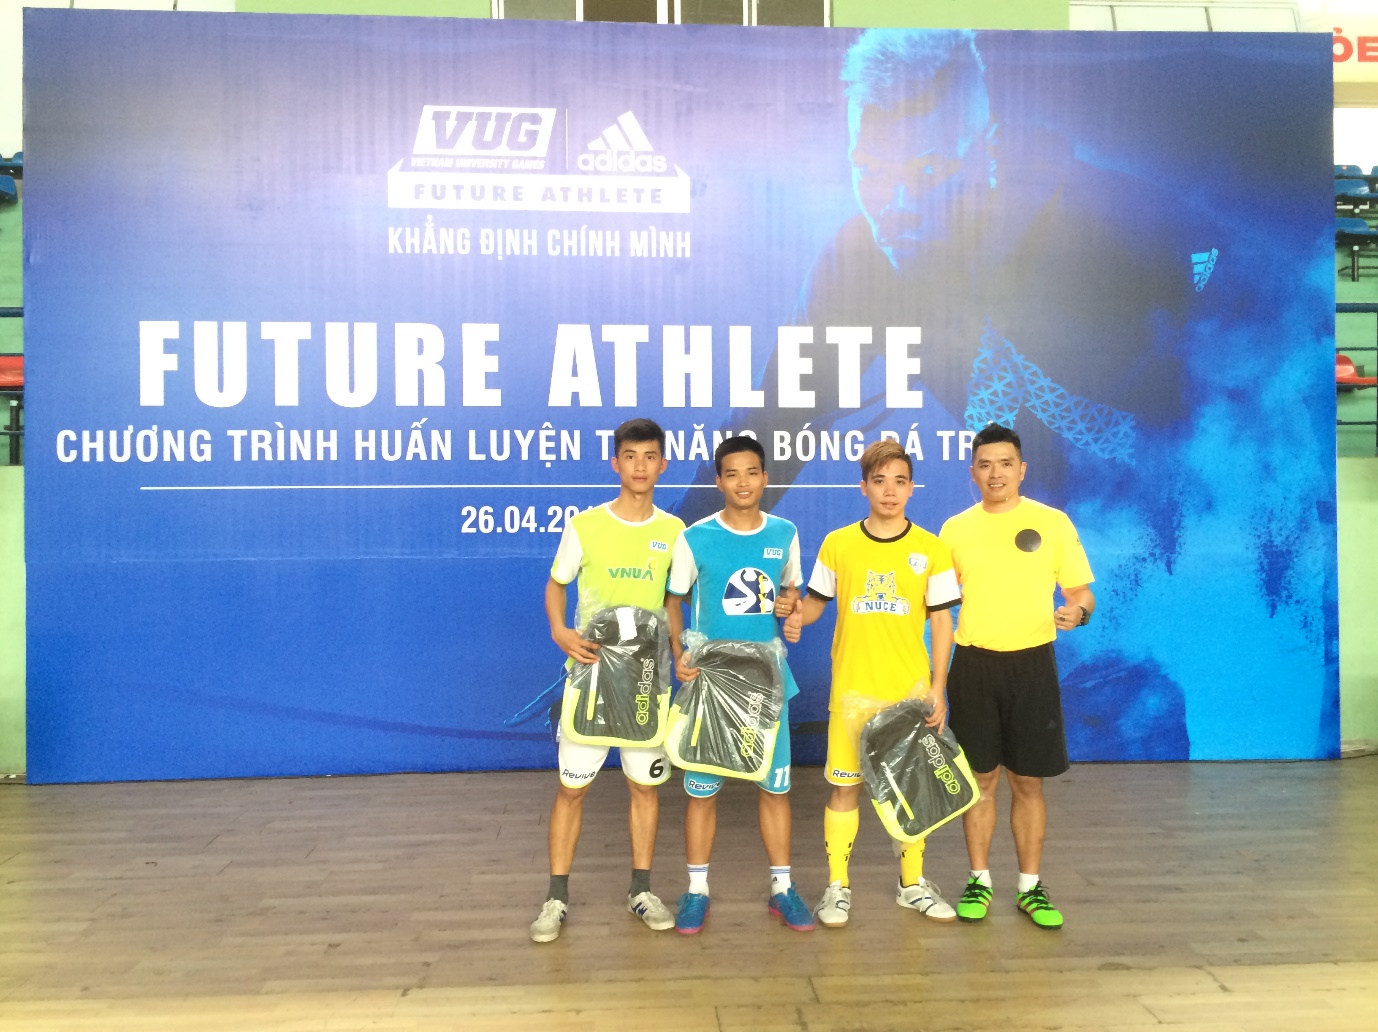 Giới trẻ hứng khởi với chương trình huấn luyện tài năng bóng đá trẻ Future Athlete - Ảnh 2.